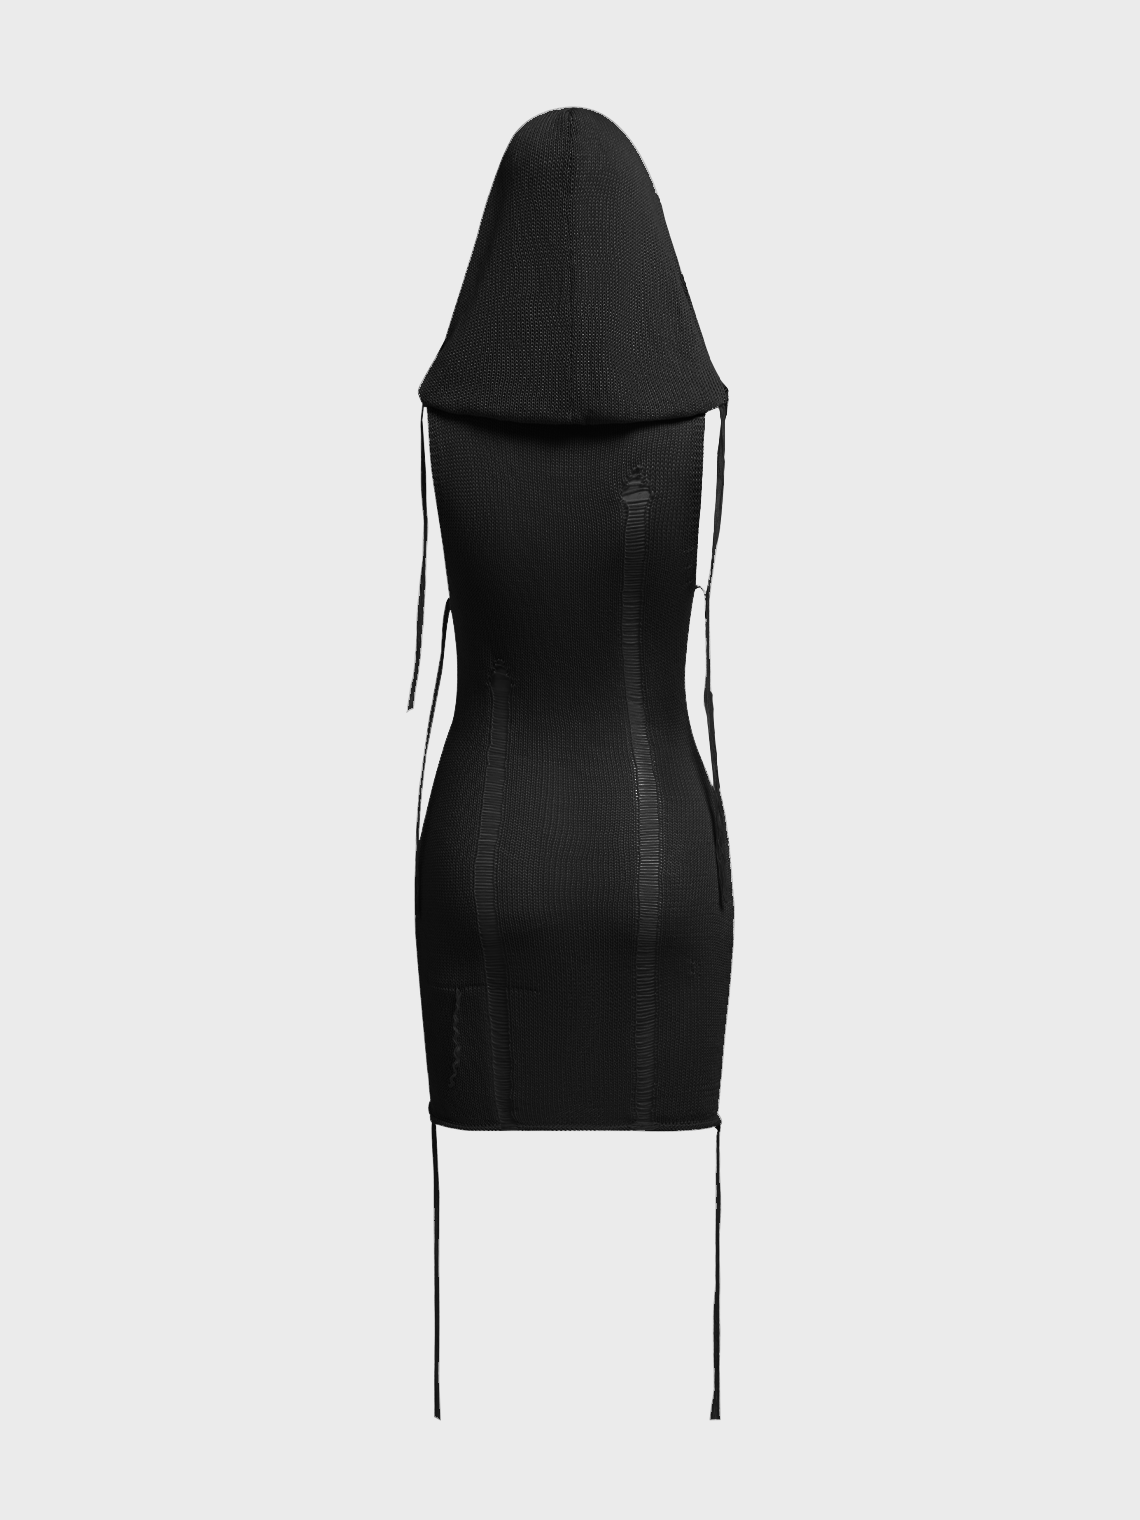 【Final Sale】Punk Black Dress Mini Dress